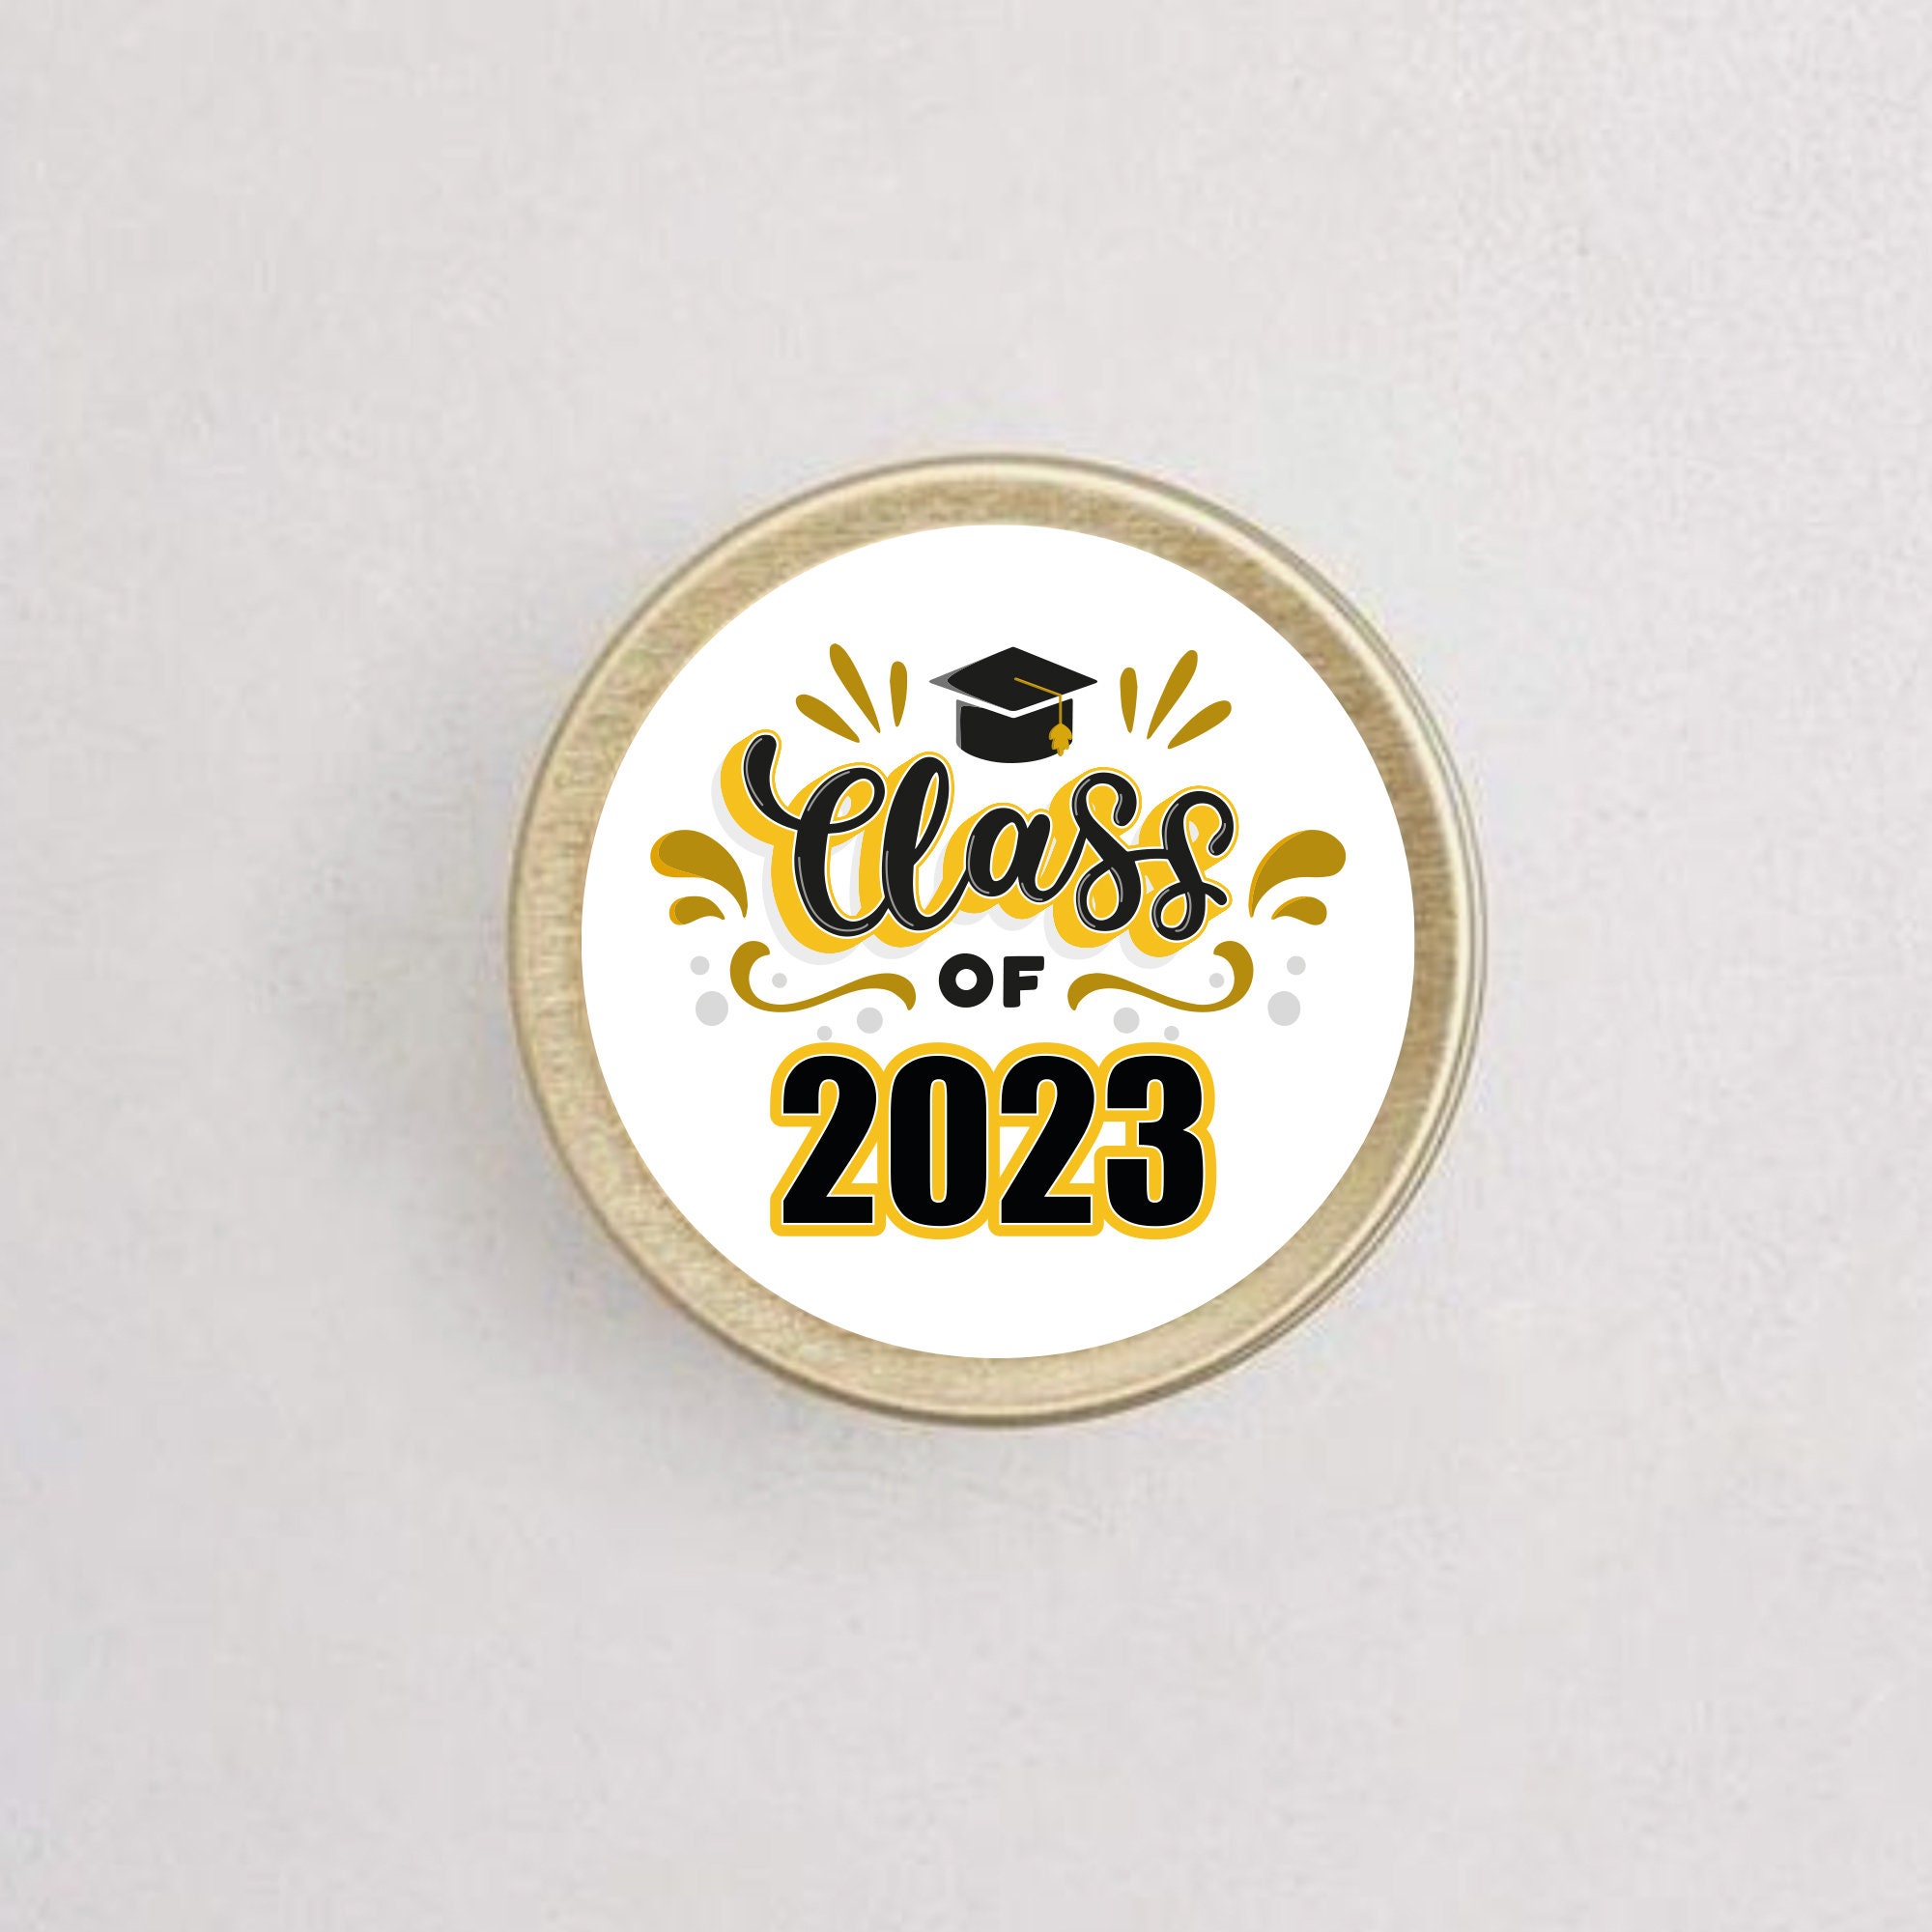 Congrats, Grad, Diploma, Cap and Gown, La Petites 3D Stickers